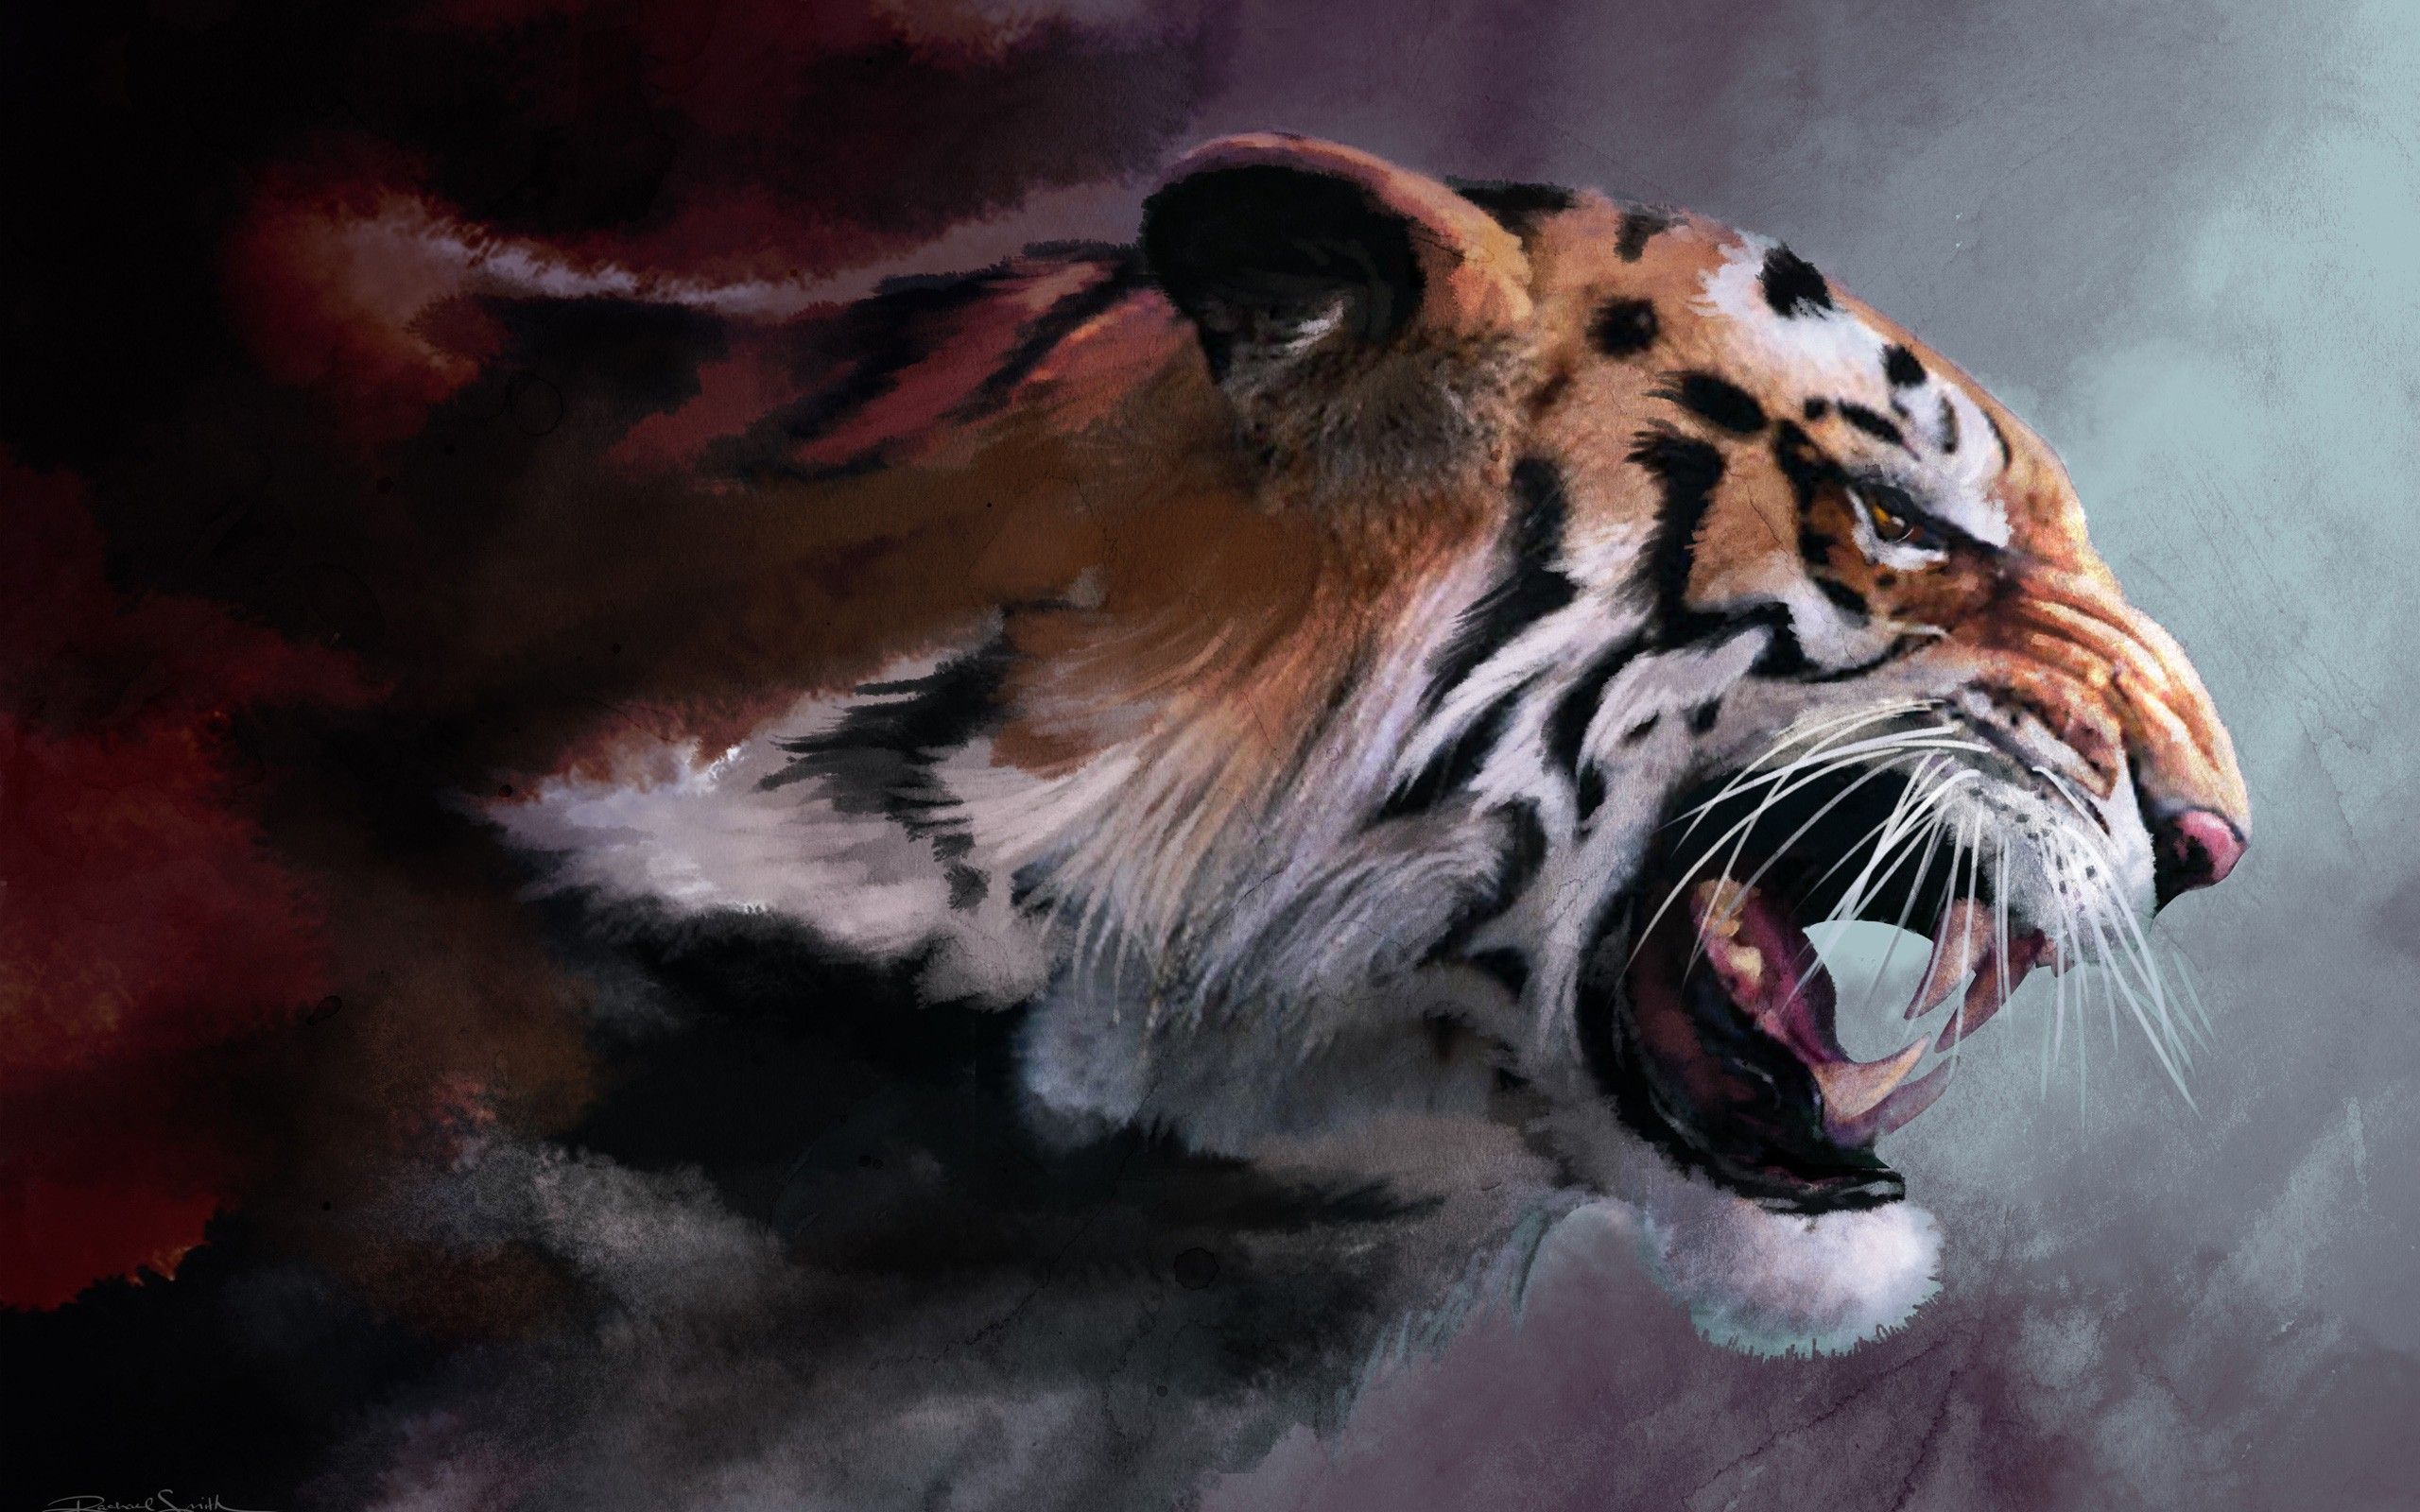 Tiger in the dark night desktop wallpaper | WallpaperPixel